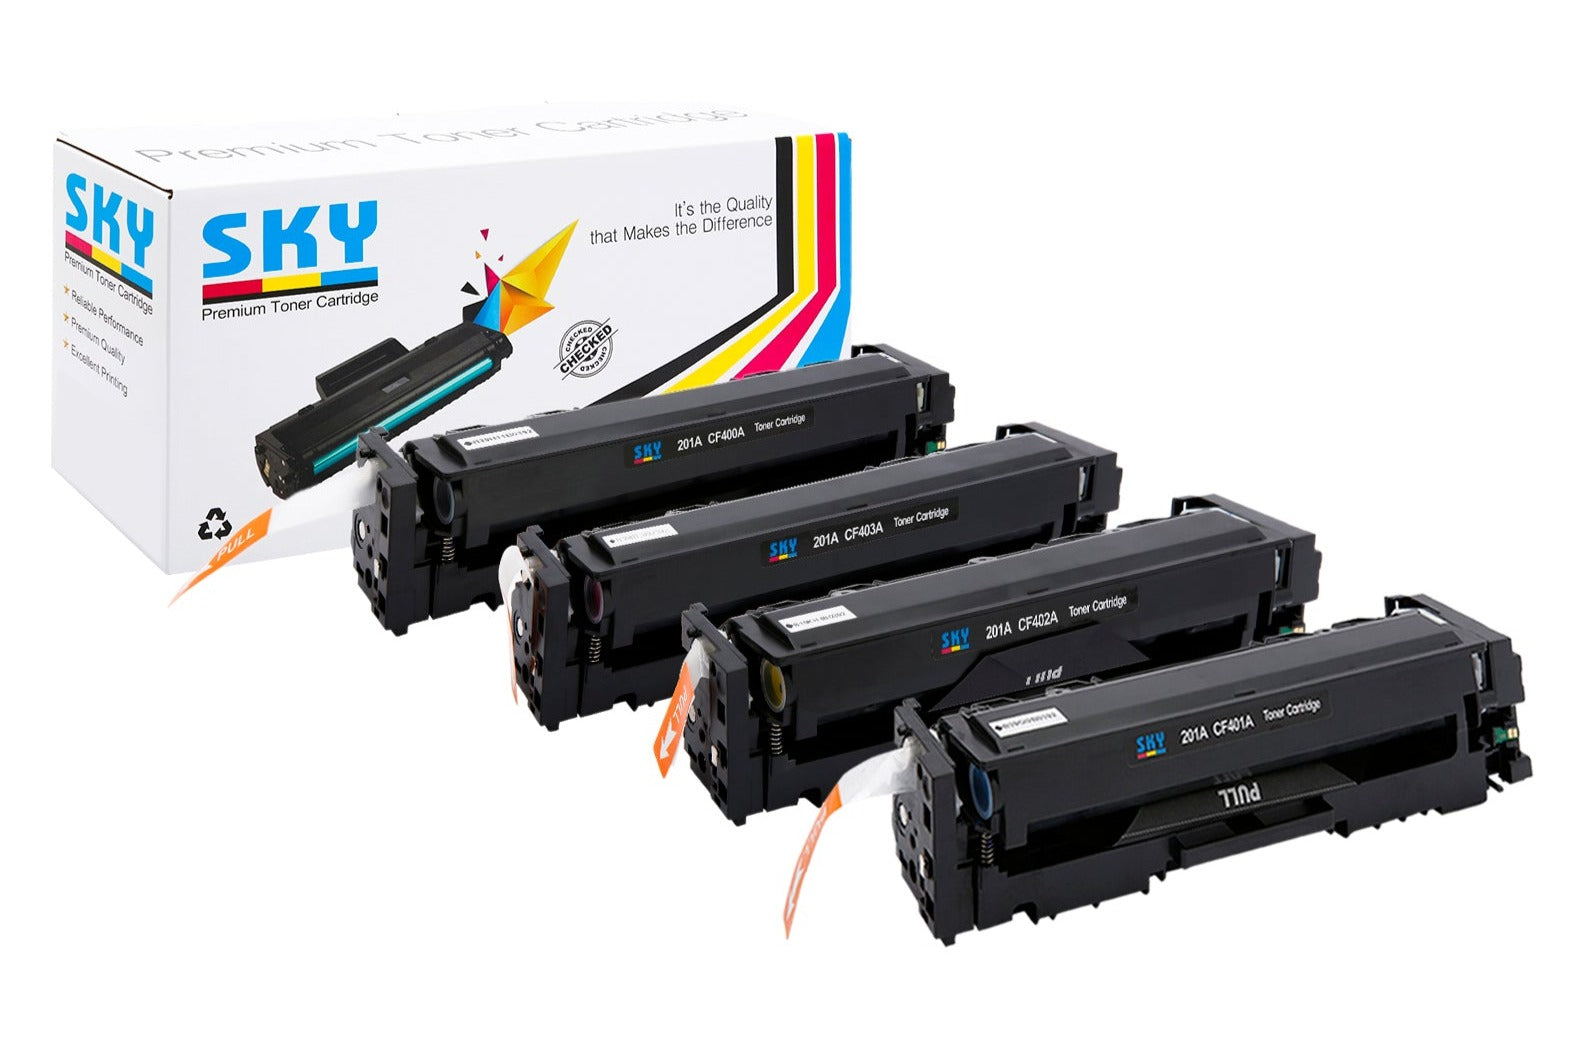 201A Toner Cartridges - 4 Color Set   for HP Colour LaserJet Pro M252, M274 and M277